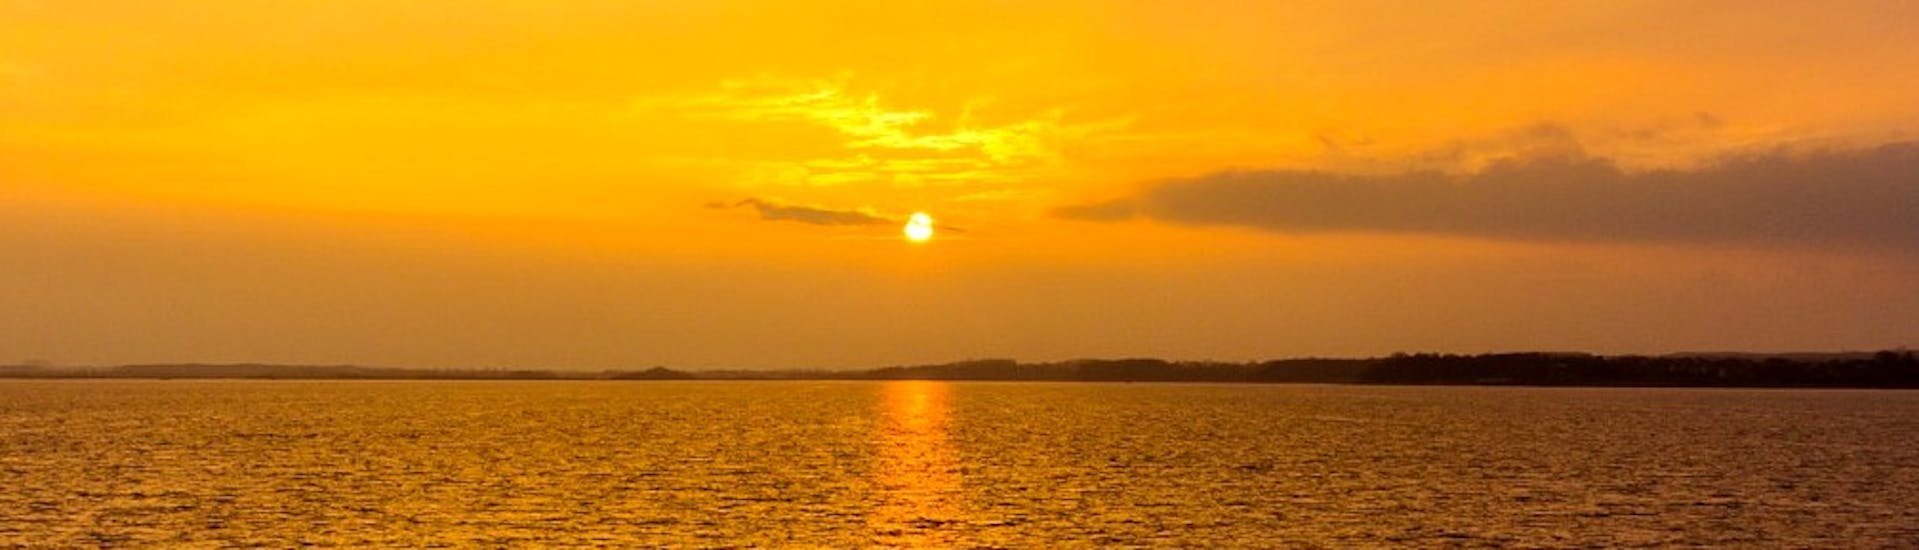 Le soleil se couche sur l'Atlantique alors qu'il peint les eaux turquoise d'une teinte rouge vif lors d'une Balade en bateau depuis Lagos au coucher du soleil avec Funtastik Tours Lagos.